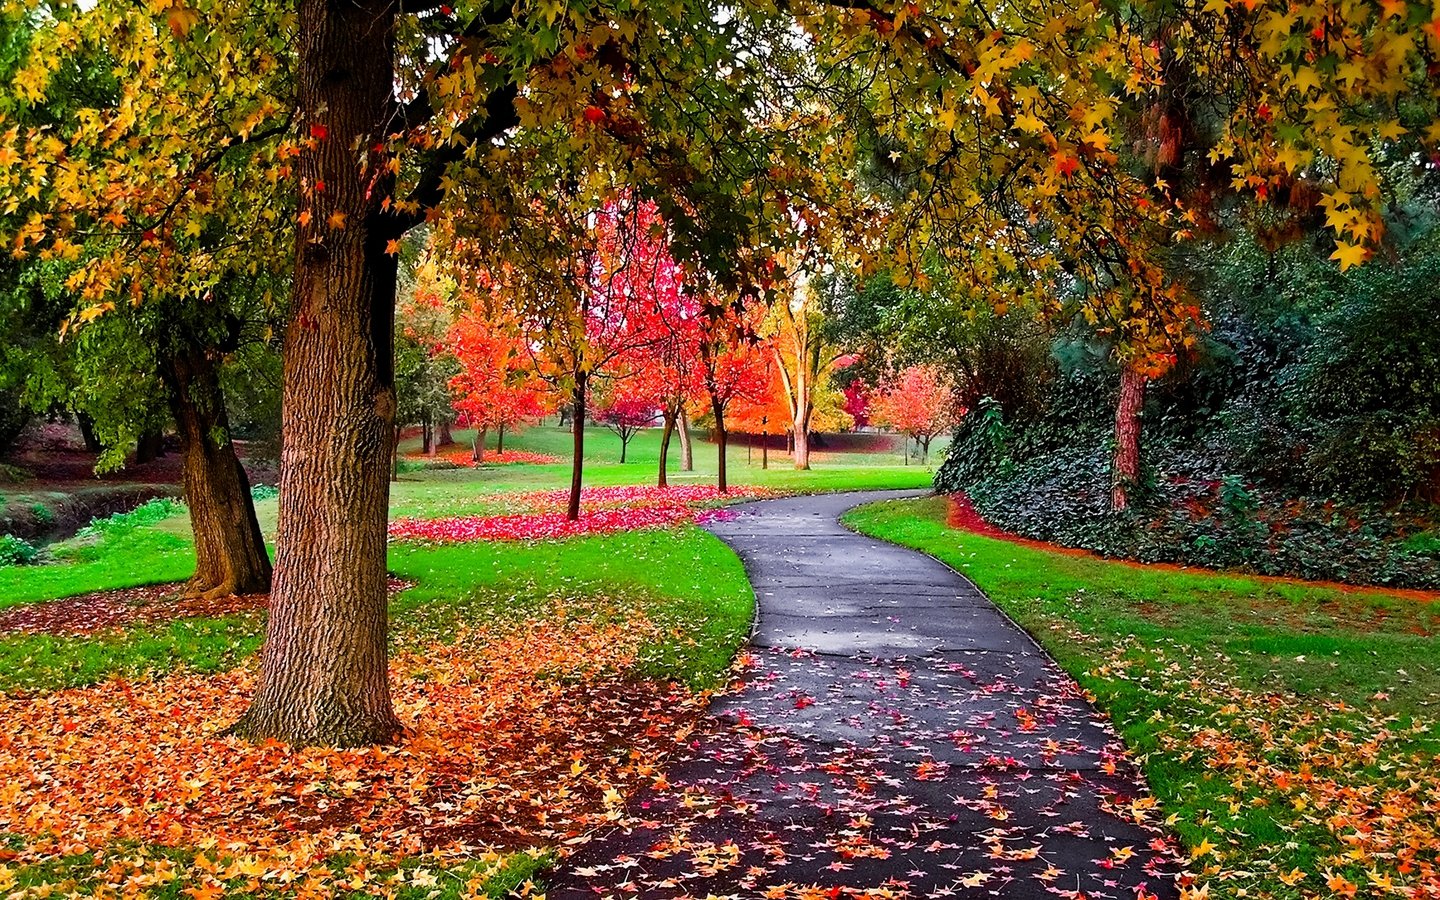 Autumn Autumn in the Park